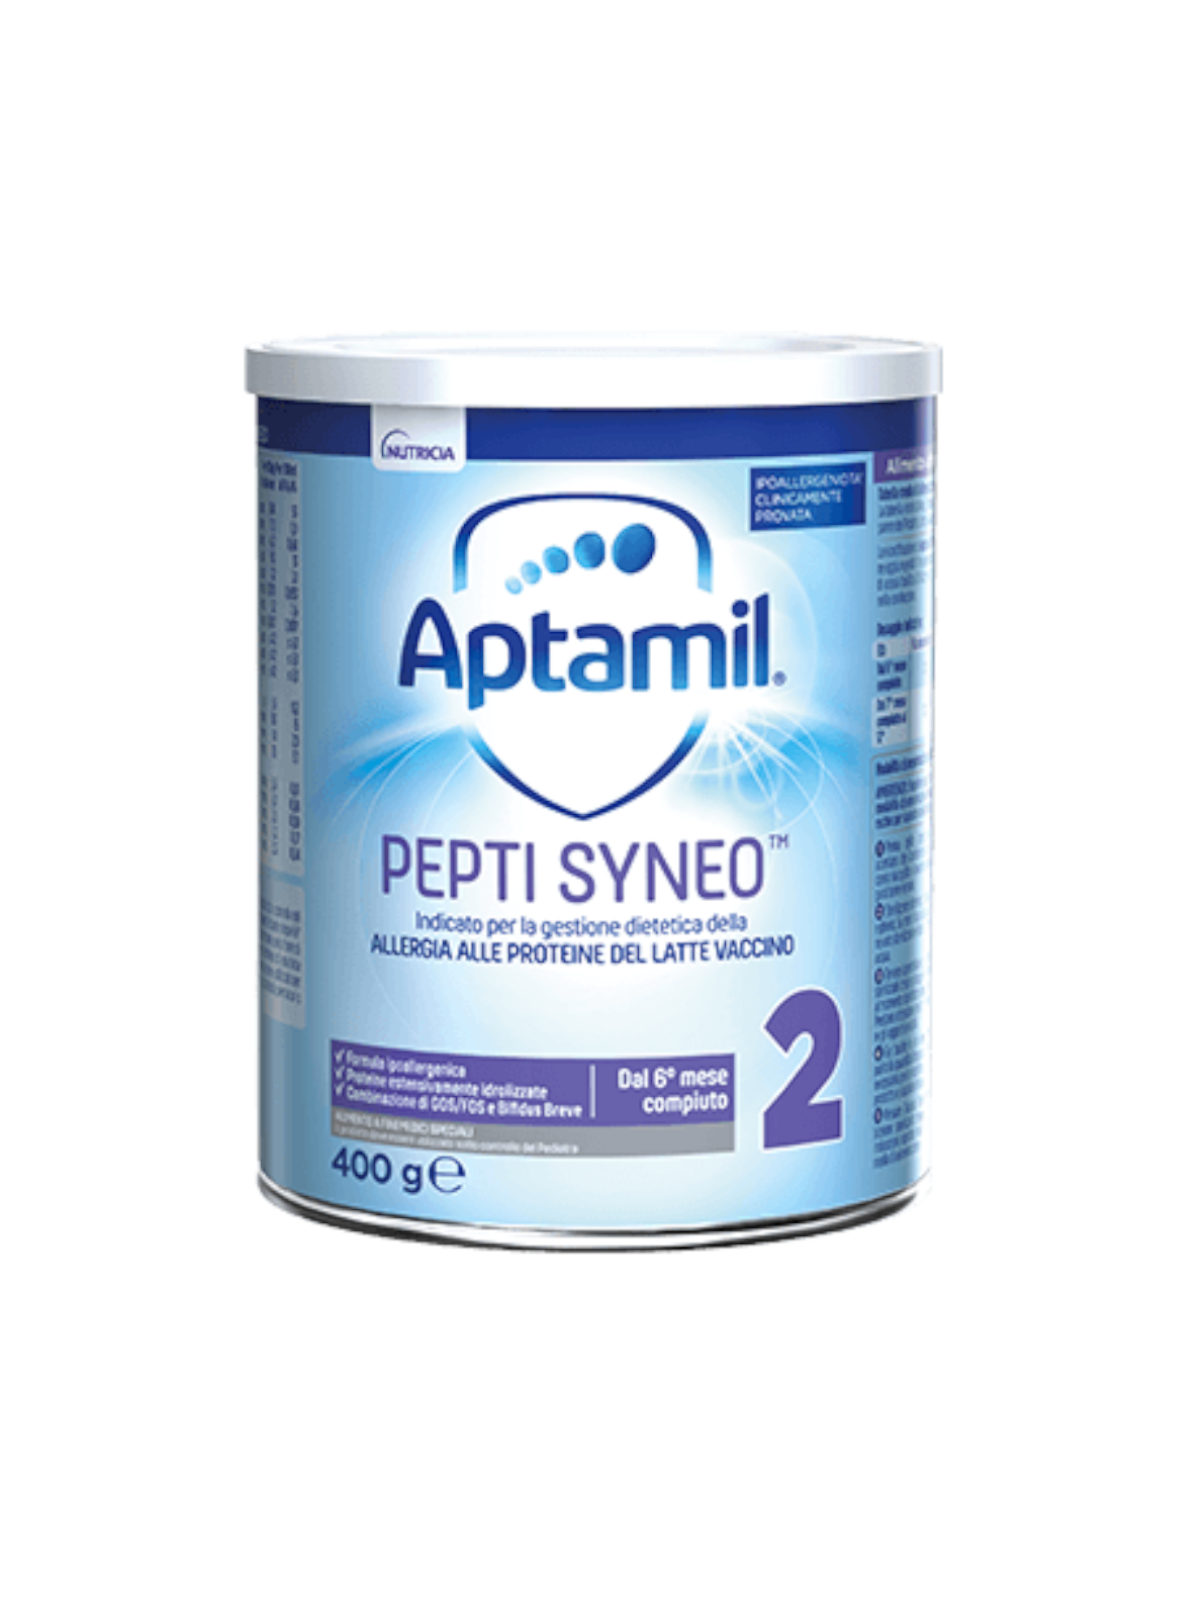 APTAMIL - Aptamil Pepti Syneo 2 400 gr - Bimbostore